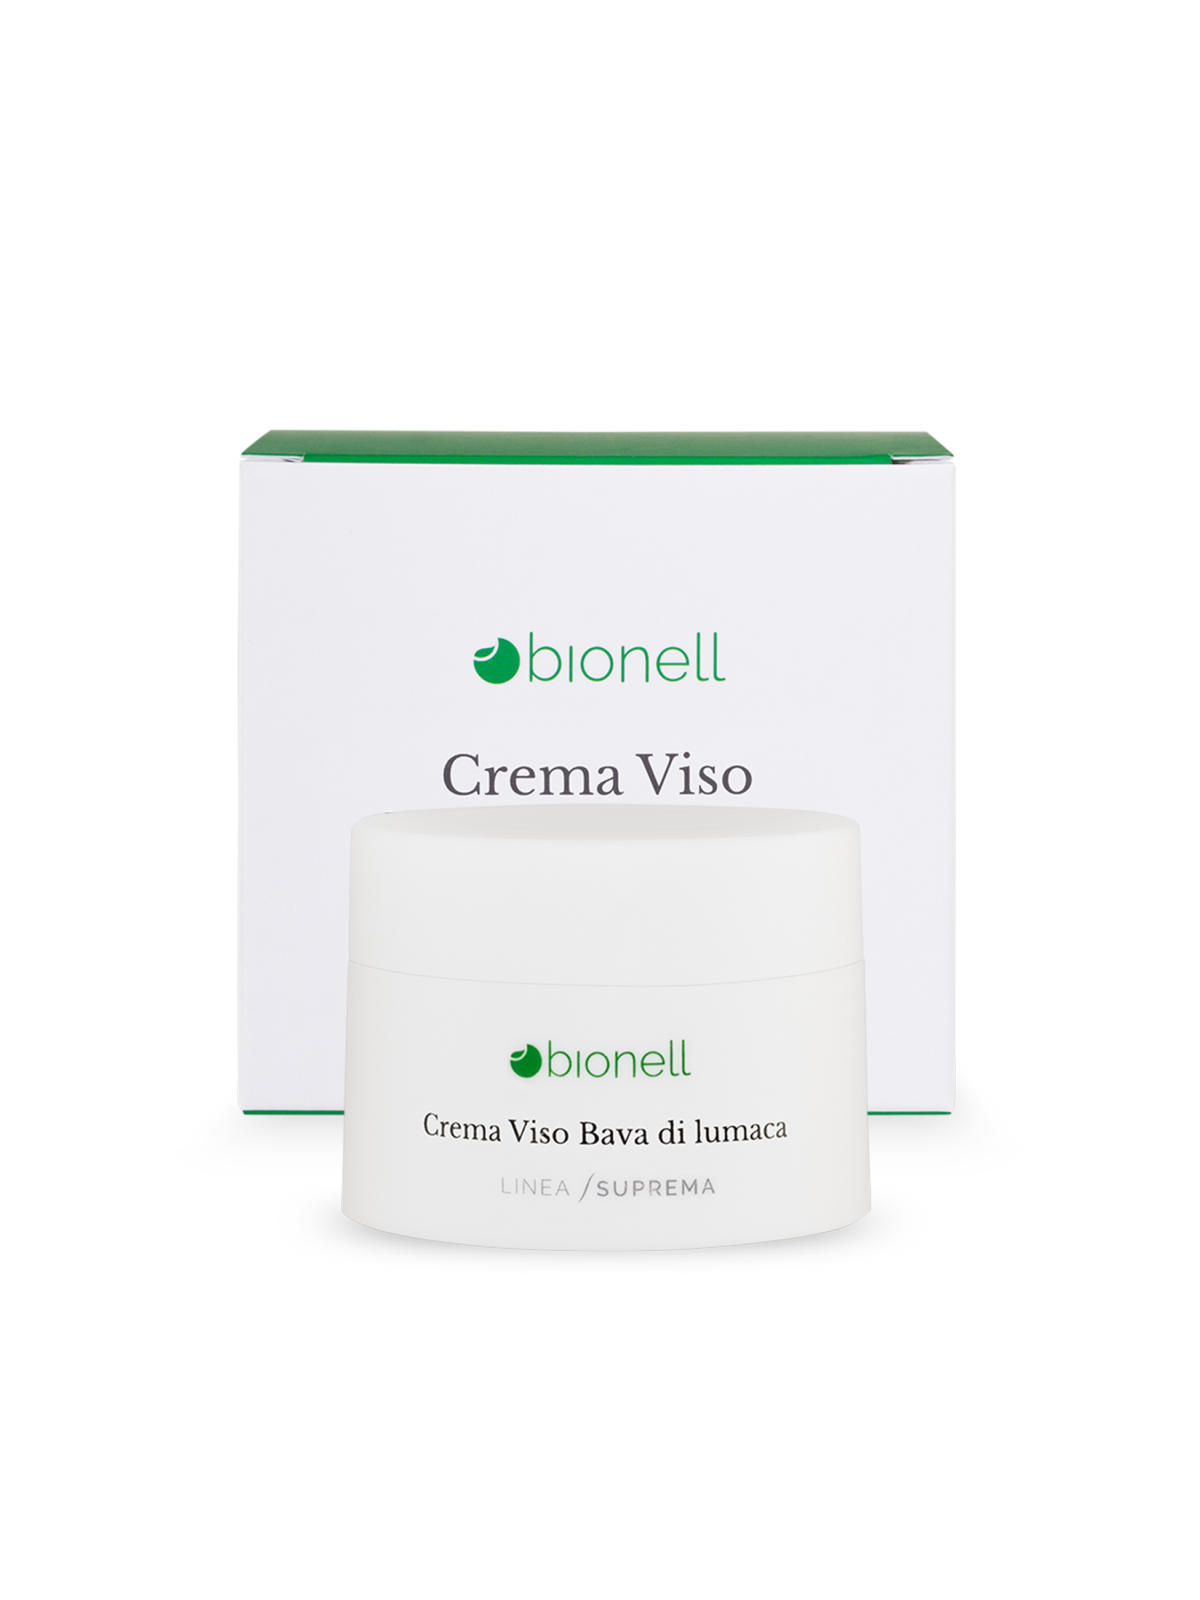 Bionell Crema viso bava di lumaca 50 ml 8,80 € -20%